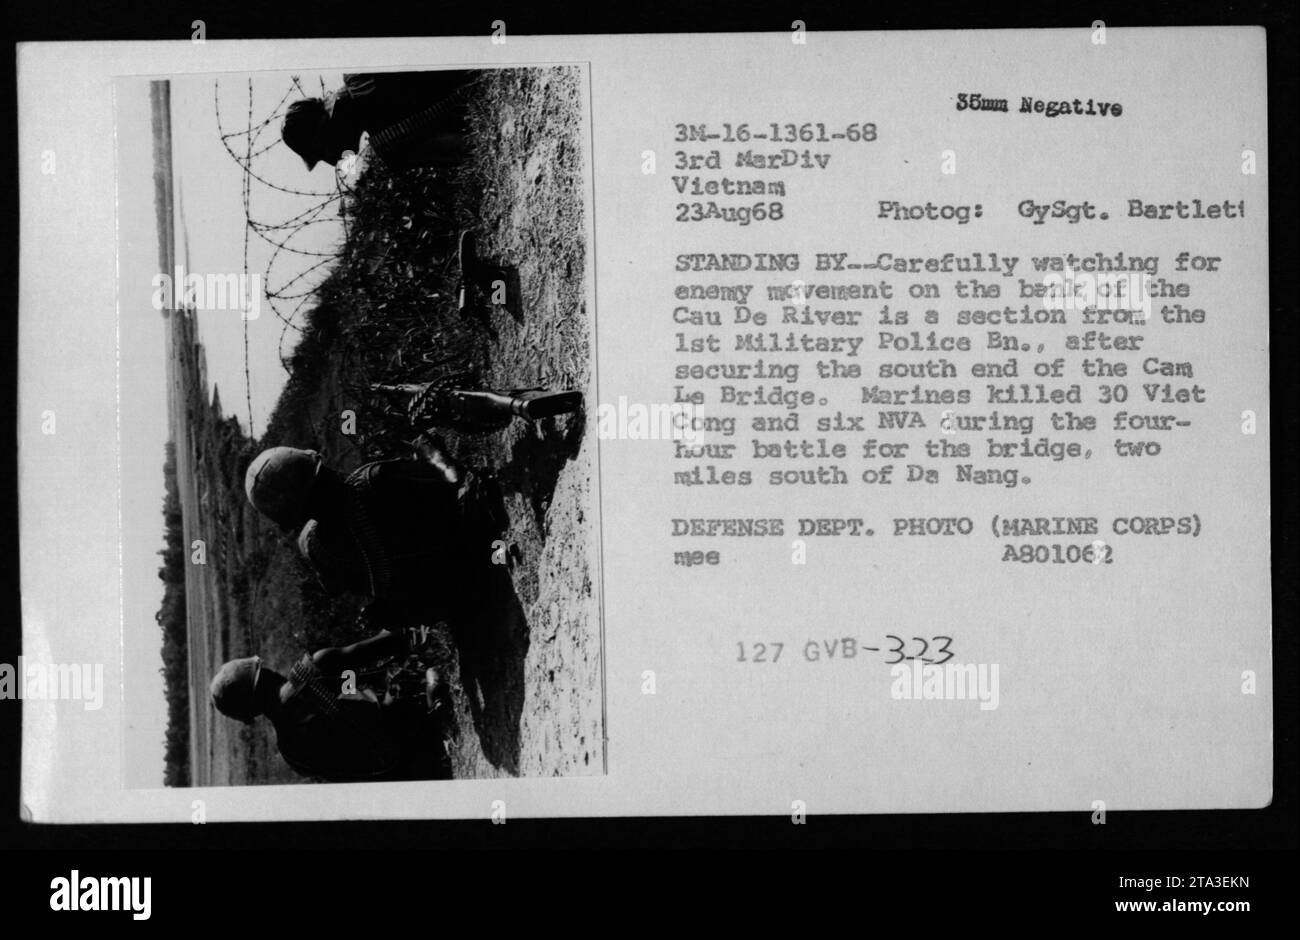 Marines des 1. Militärpolizeibataillons überwachen die feindliche Bewegung am Ufer des Cau de River, nachdem sie das südliche Ende der Cam Le Bridge gesichert haben. Während einer vierstündigen Schlacht töteten die Marines 30 Vietnam Cong und sechs NVA-Soldaten. Dieses Foto wurde am 23. August 1968 von GySgt aufgenommen. Bartlett. Stockfoto